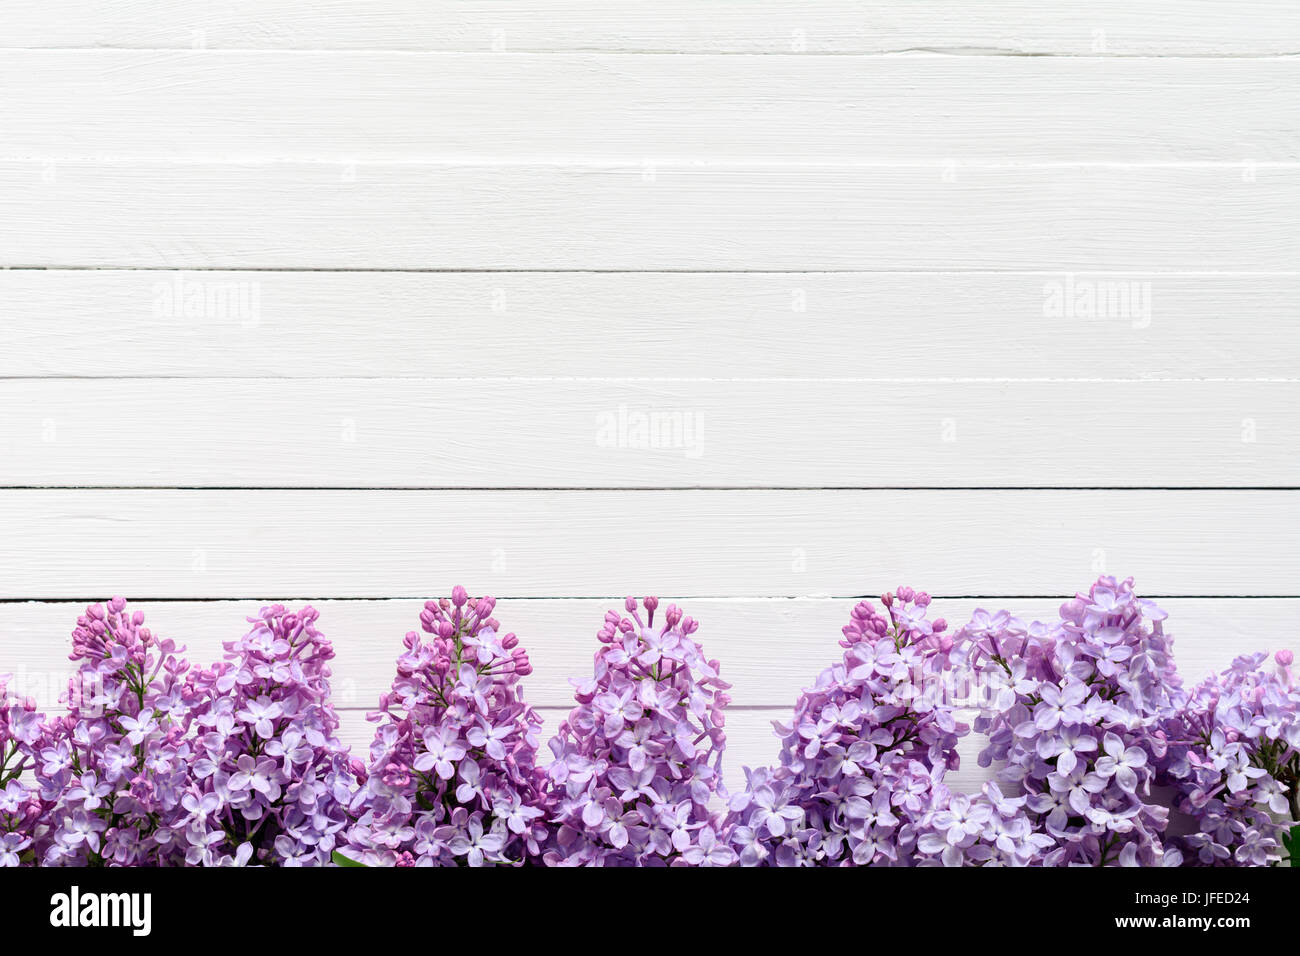 Composición de marco flores lila sobre fondo blanco. Sentar planas de lilas. Espacio de copia Foto de stock